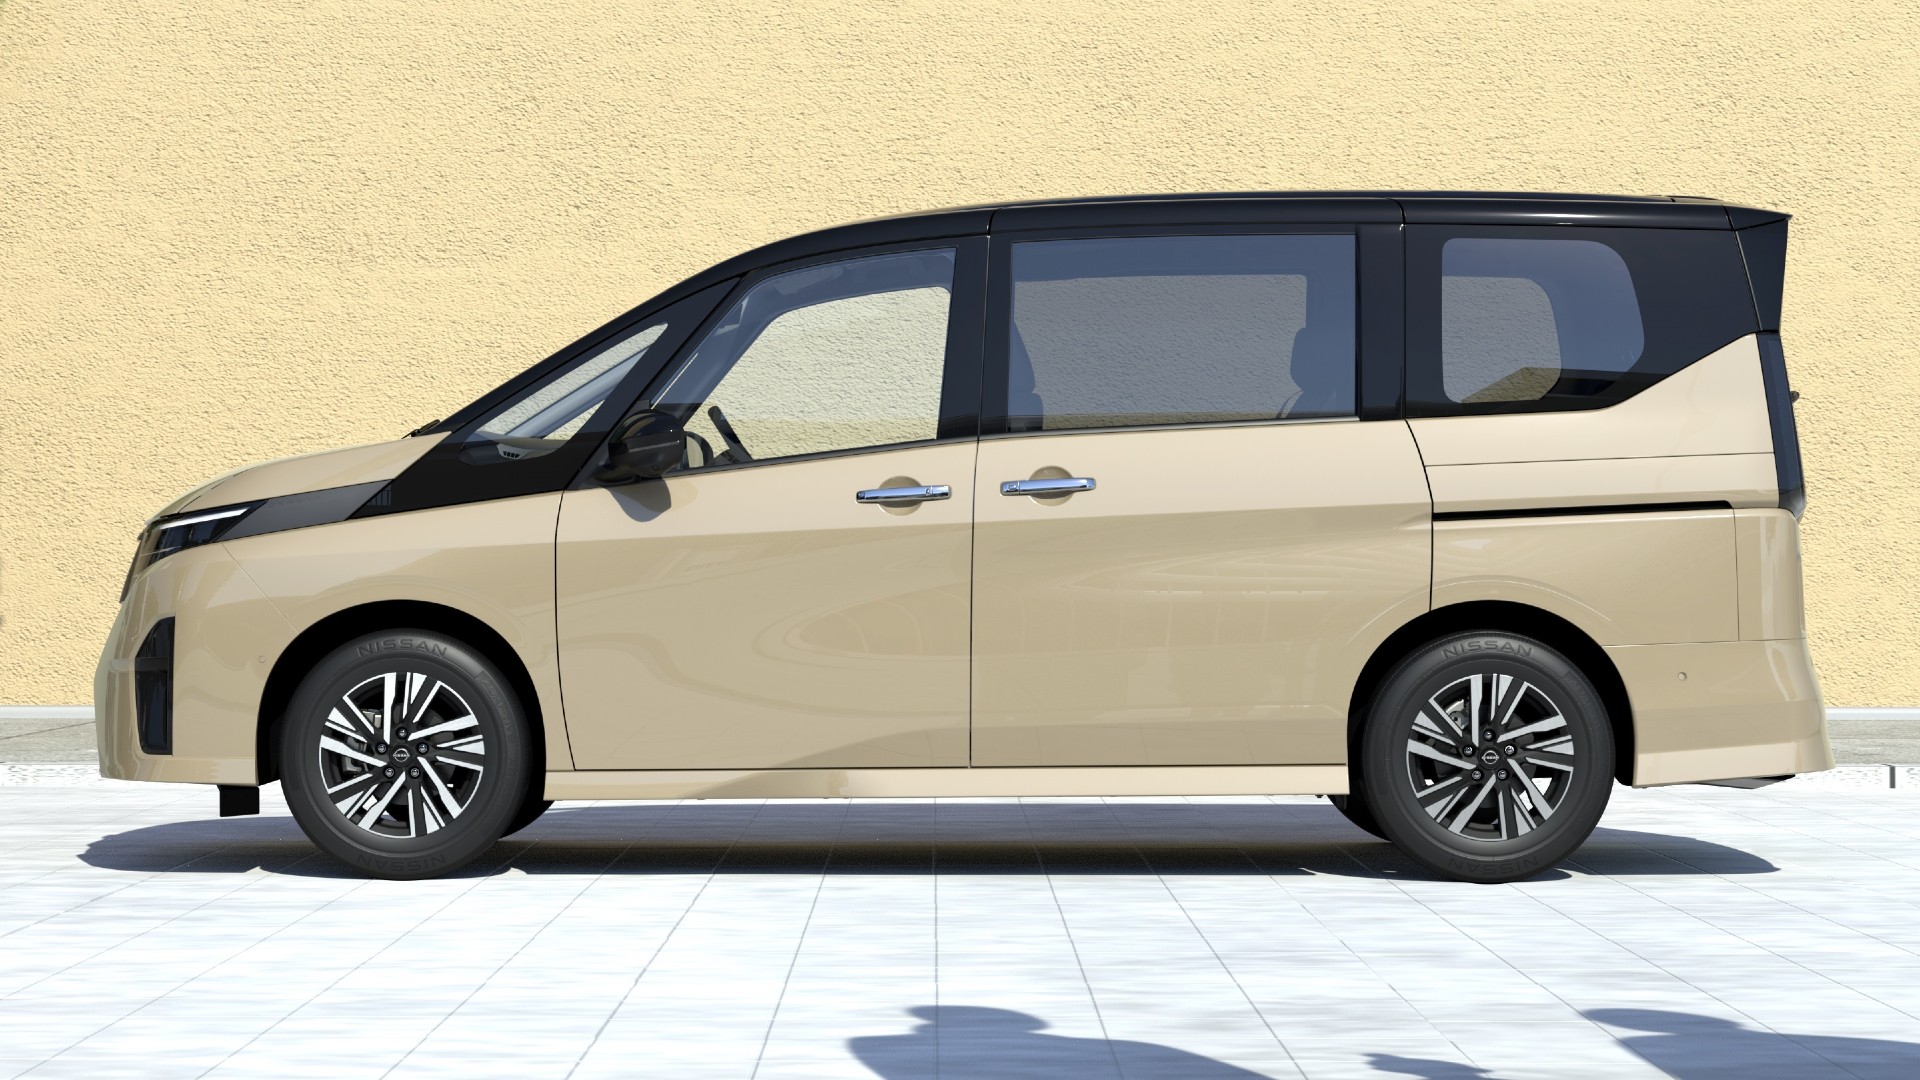 Yeni Nissan Serena minivan tanıtıldı: İşte tasarımı ve özellikleri